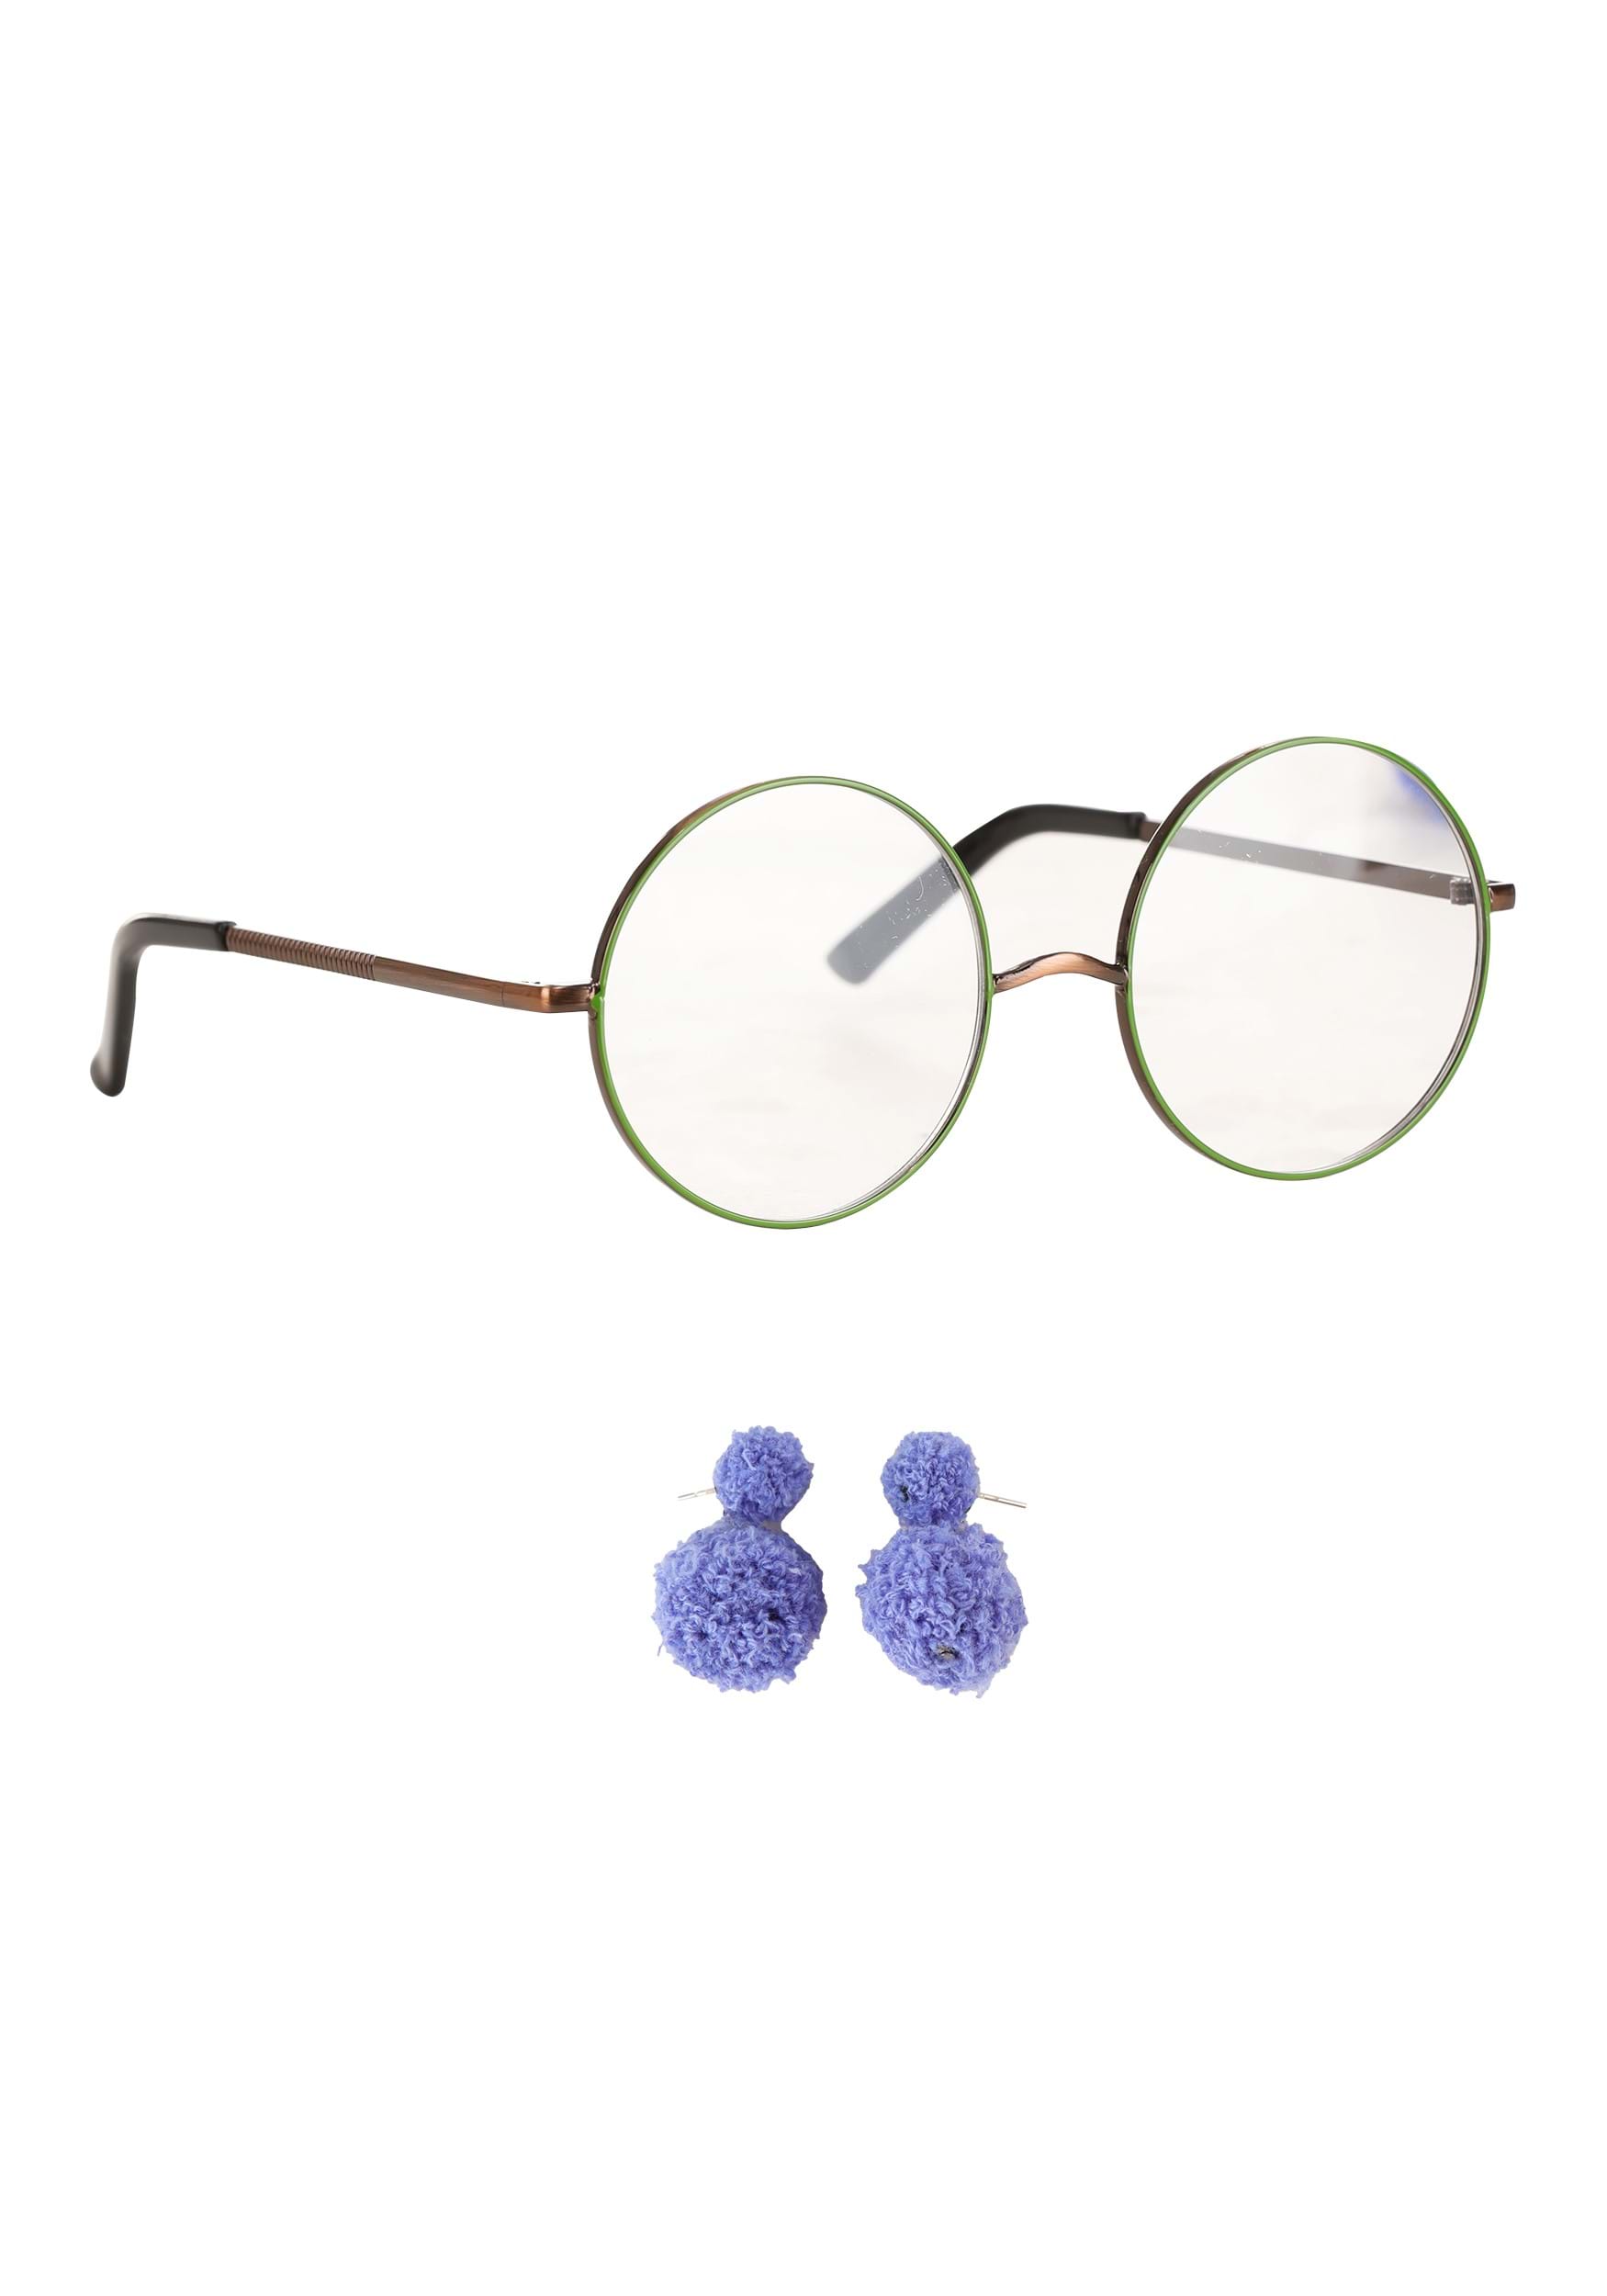 Mirabel Glasses & Earrings Costume Kit